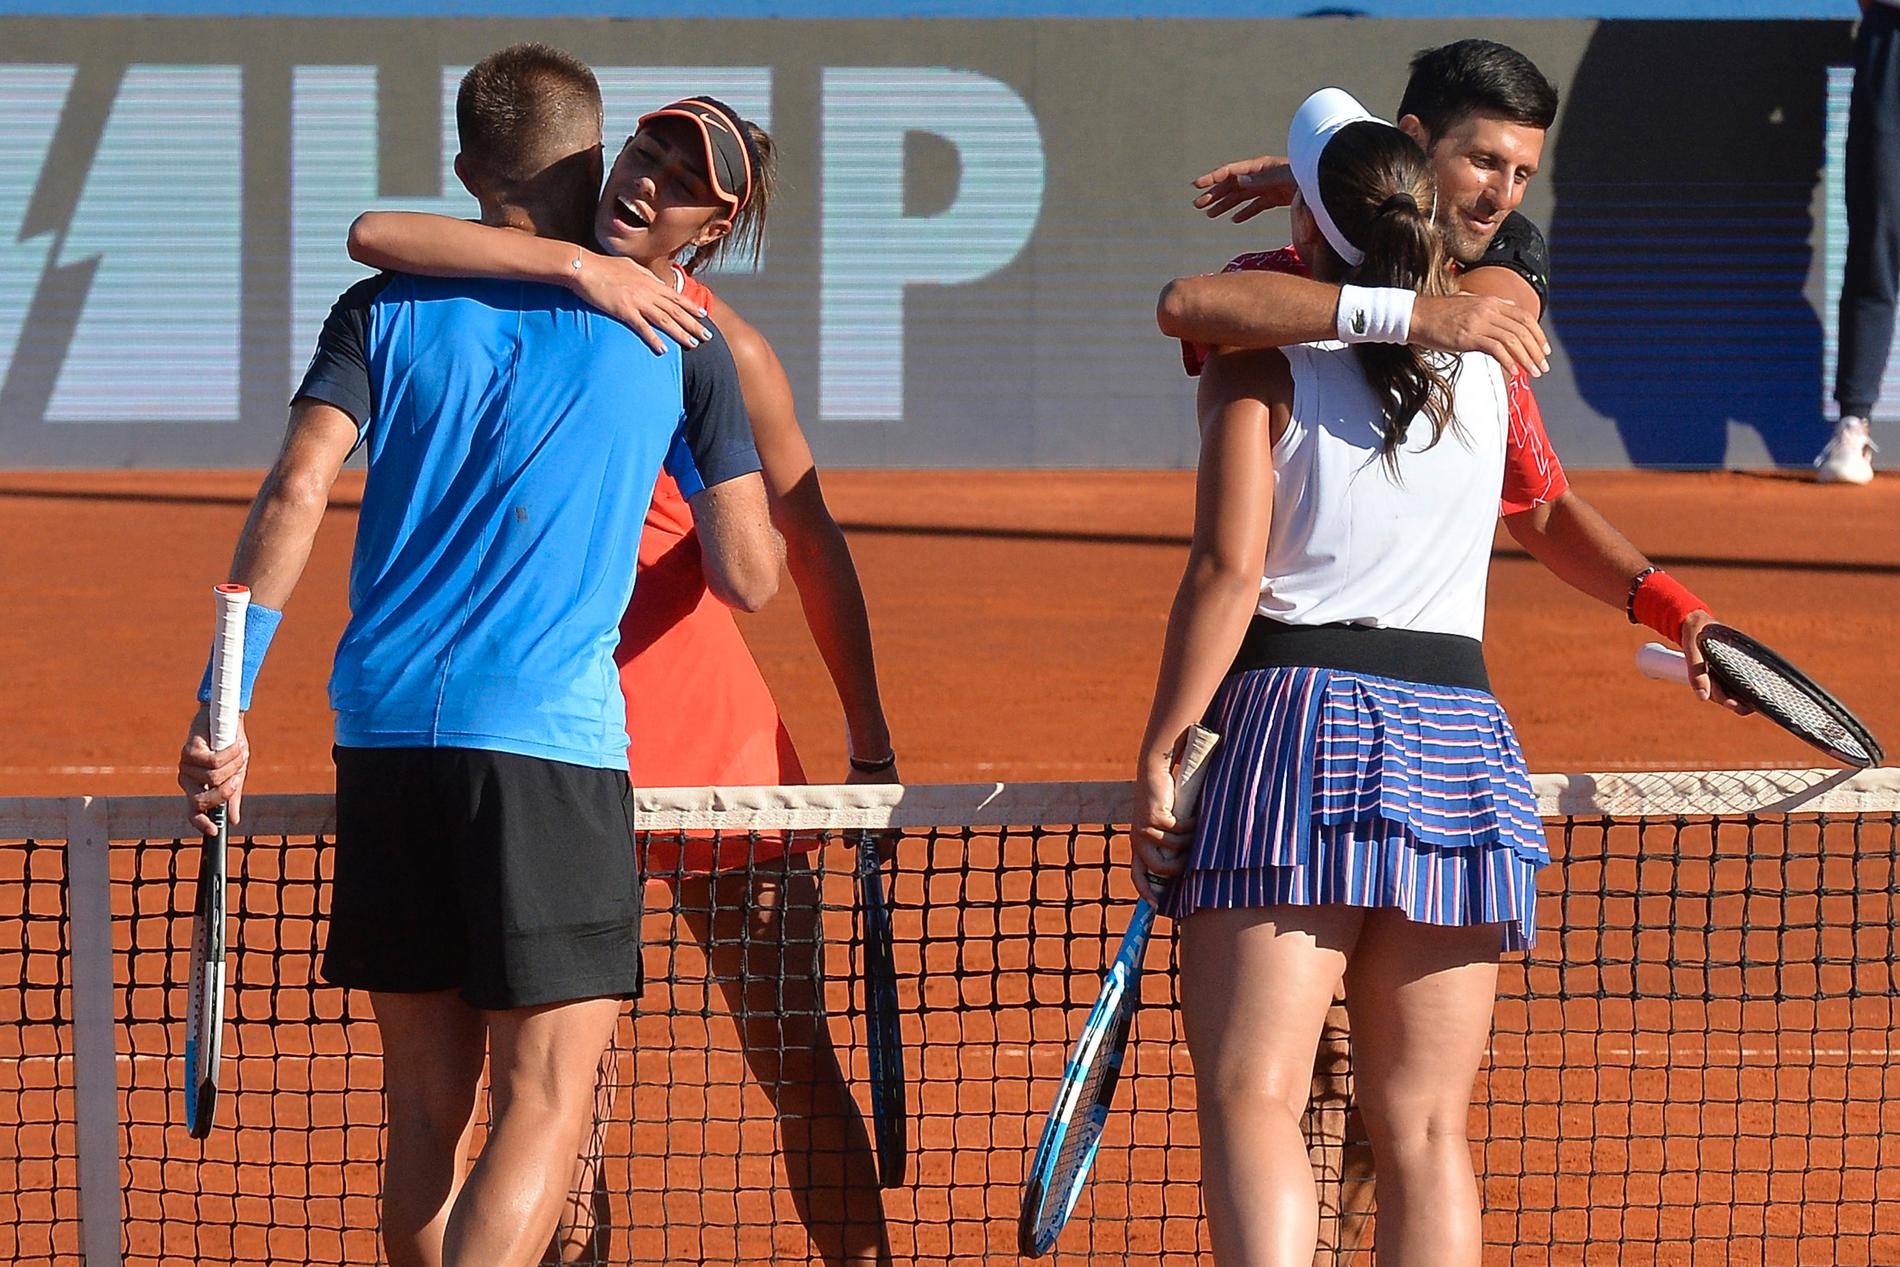 Djokovic turnering fick mycket kritik då den saknade restriktioner för att förhindra smittspridning